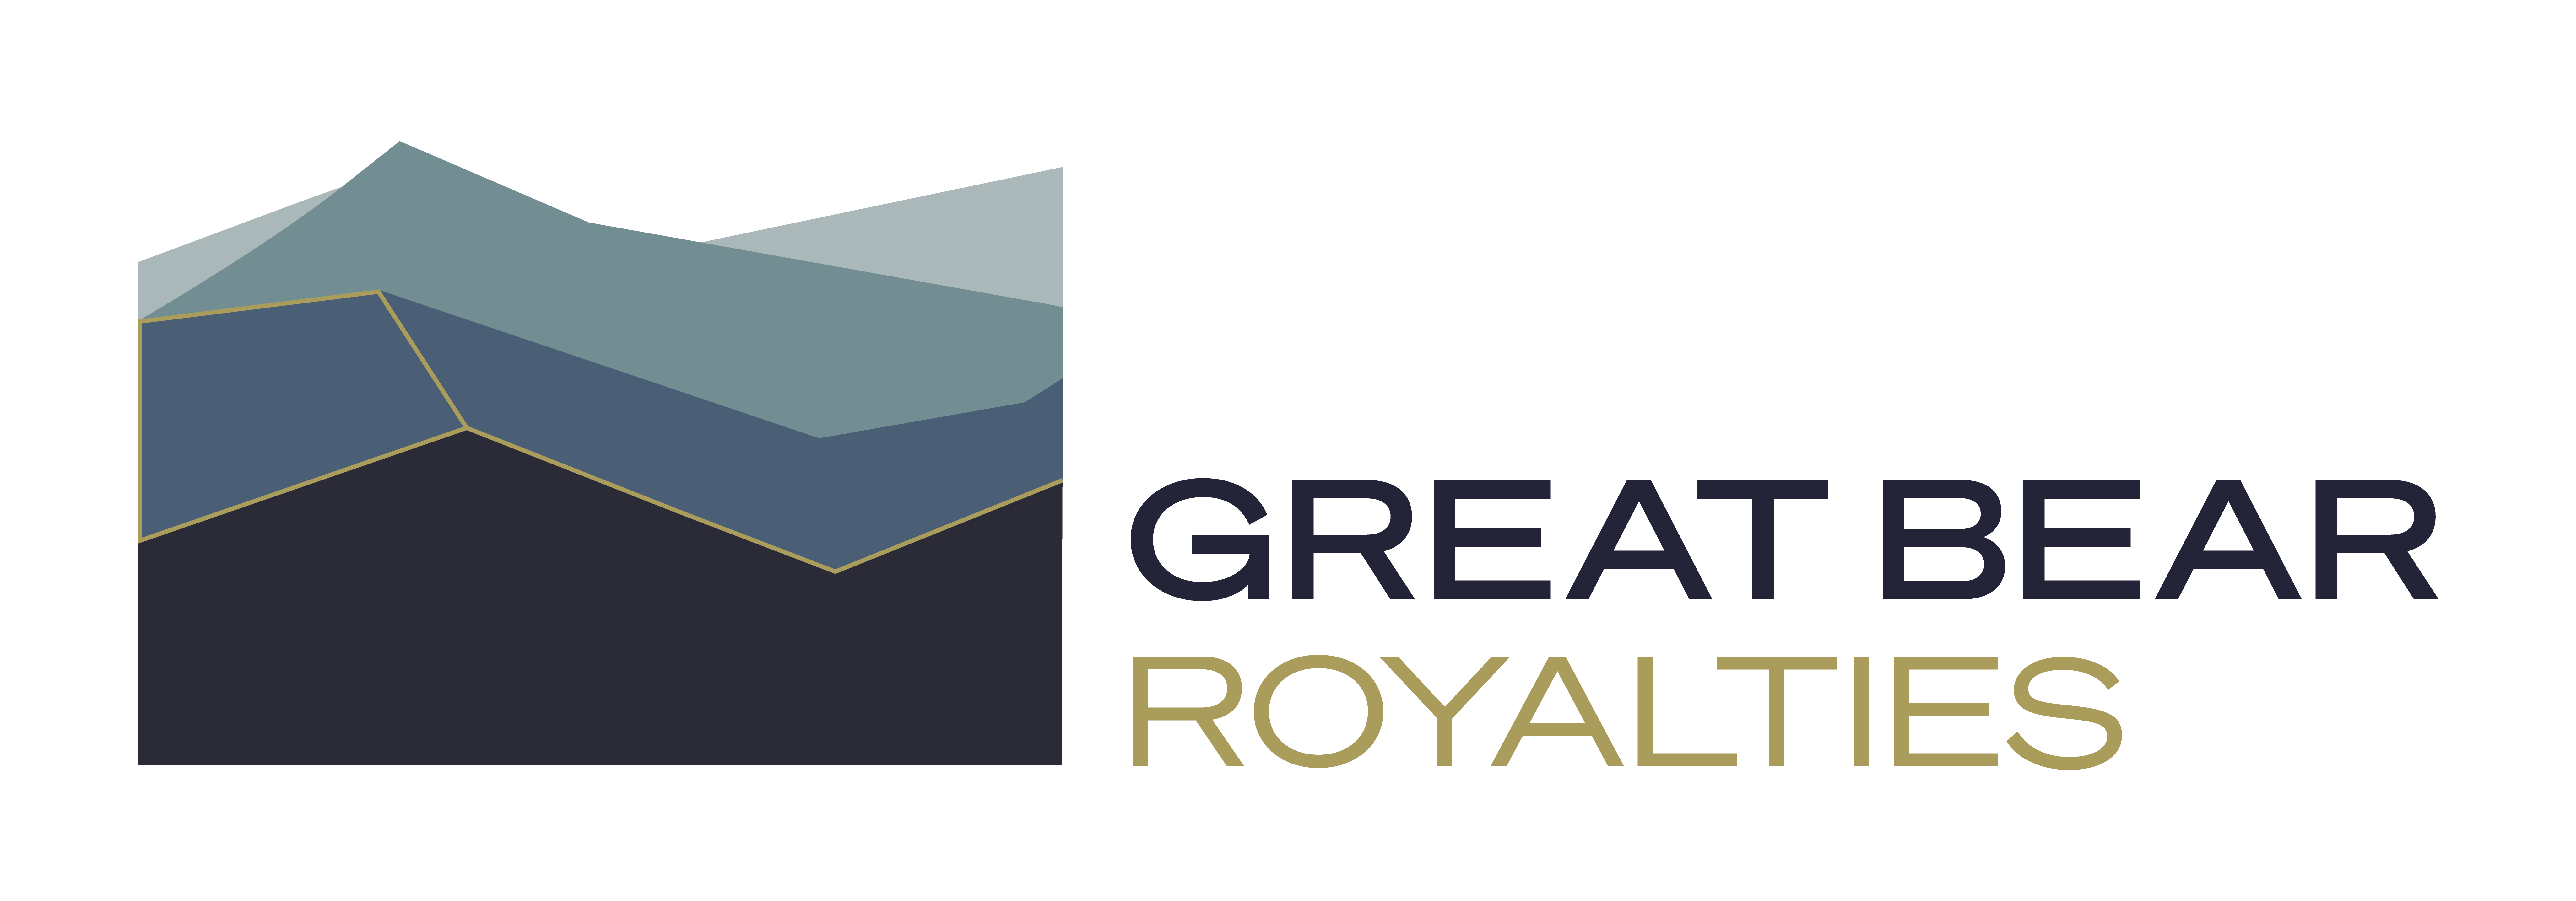 Great Bear Royalties